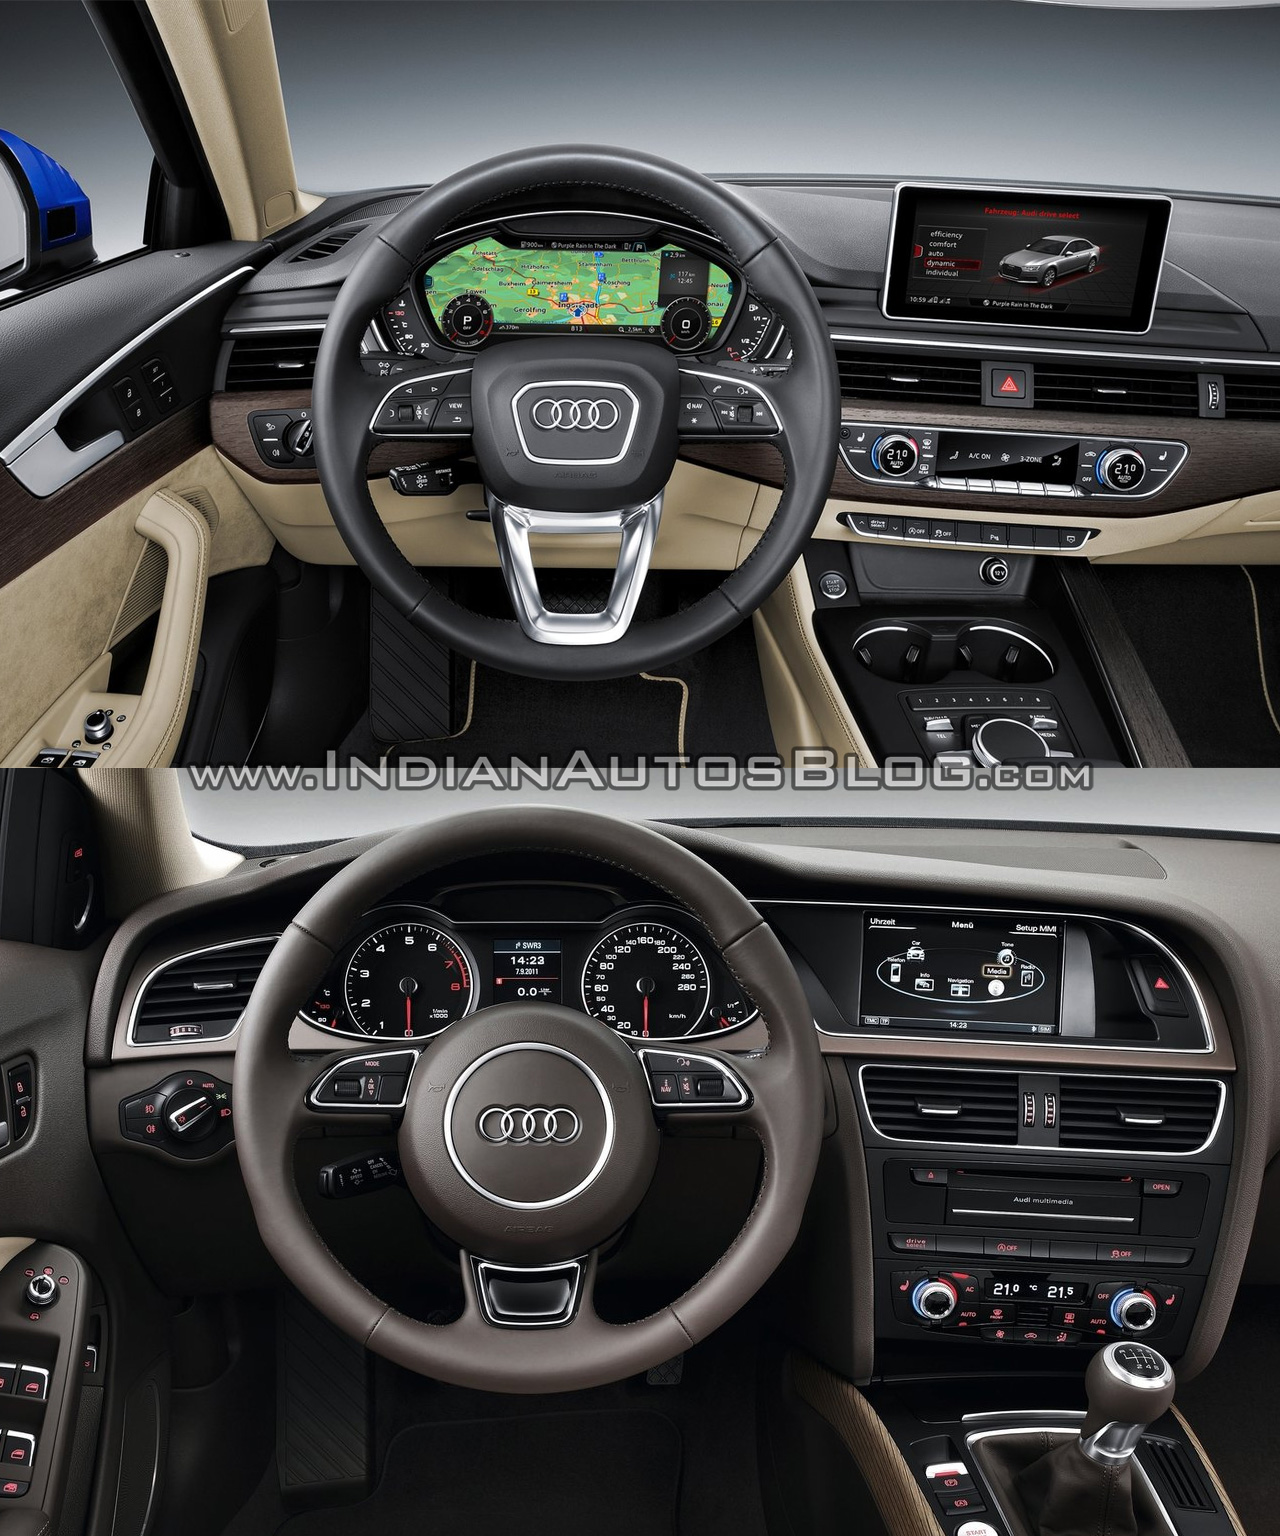 2016 Audi A4 (B9) vs 2013 Audi A4 (B8) - Old vs New